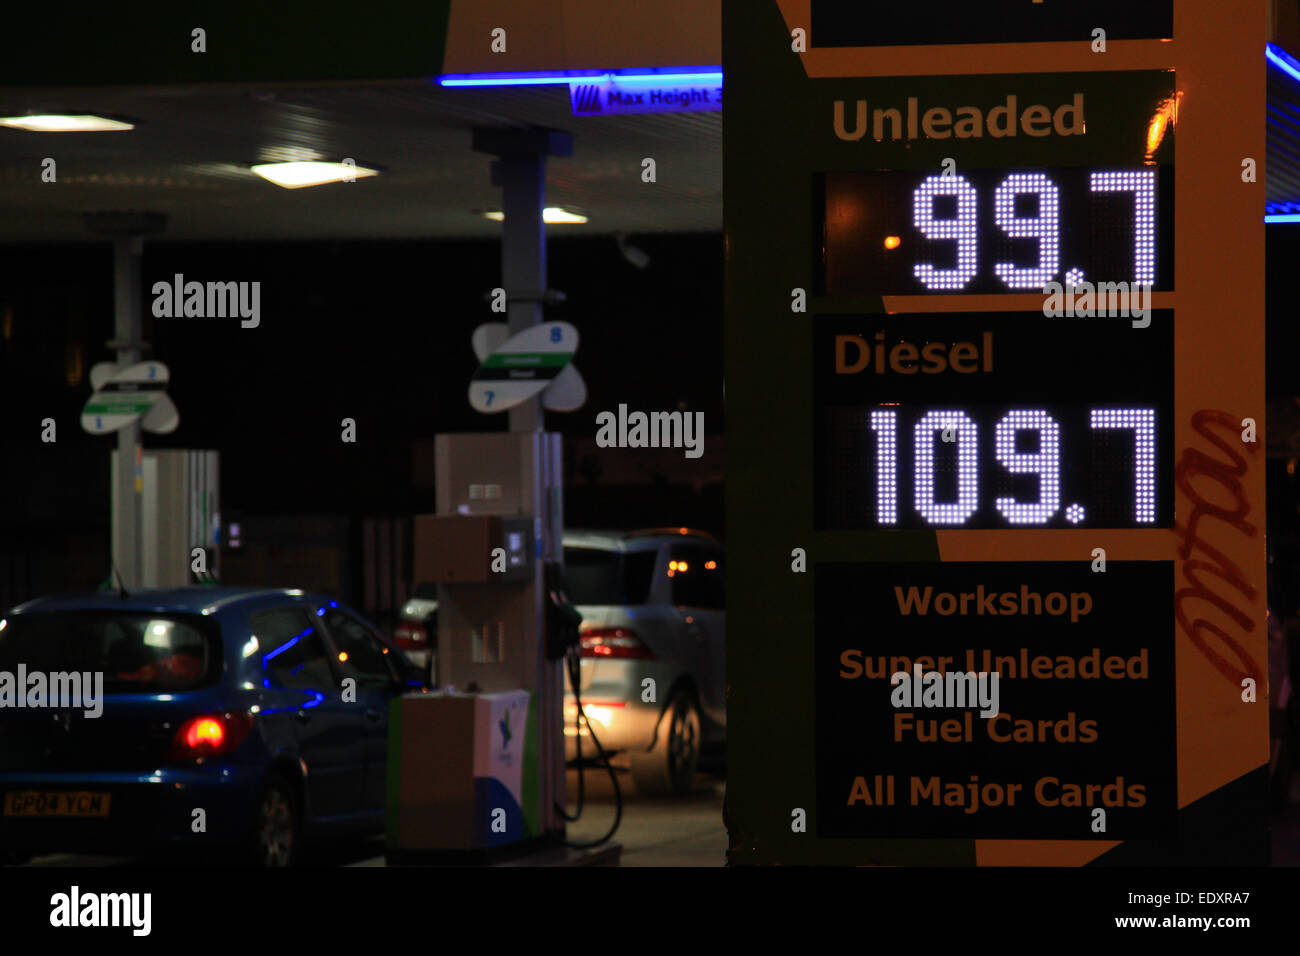 Vue de nuit sur une station de remplissage essence britannique montrant le prix en pence. Birmingham UK Banque D'Images